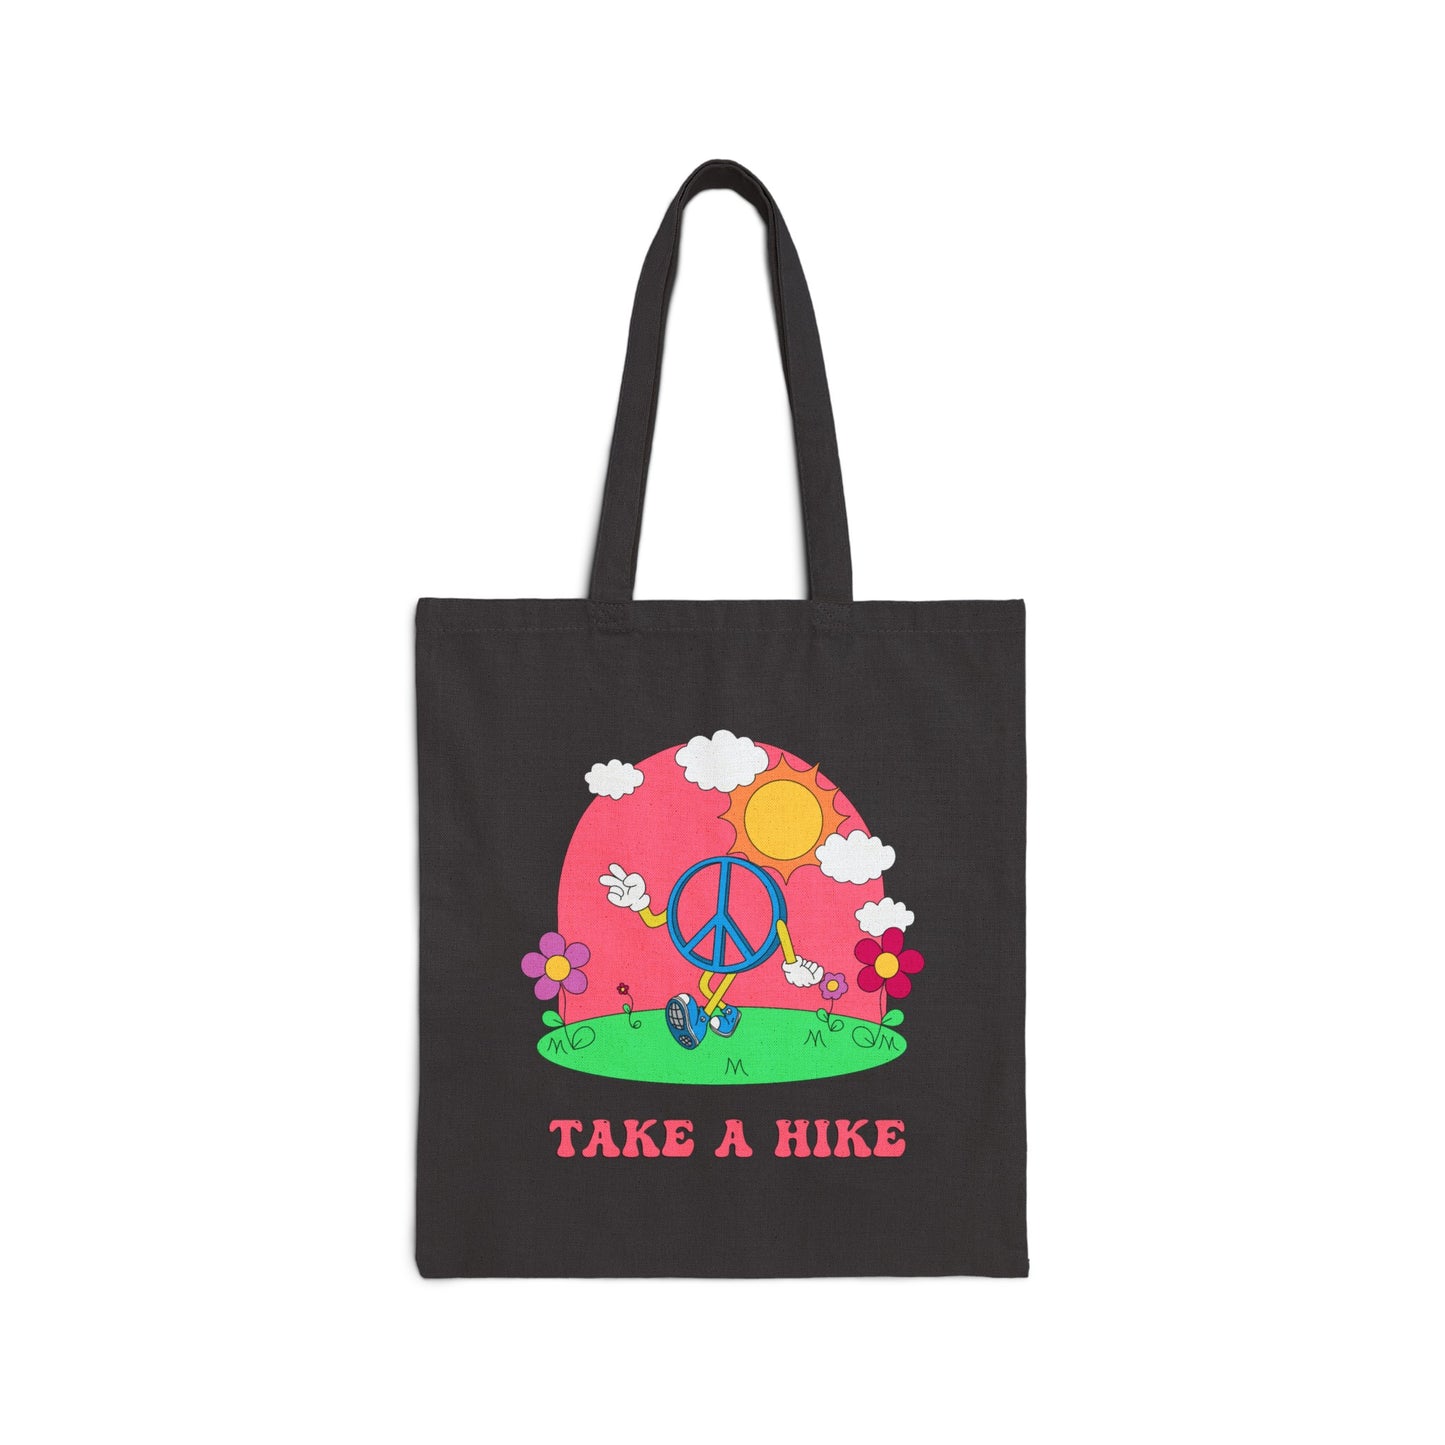 "Take A Hike" Tote Bag